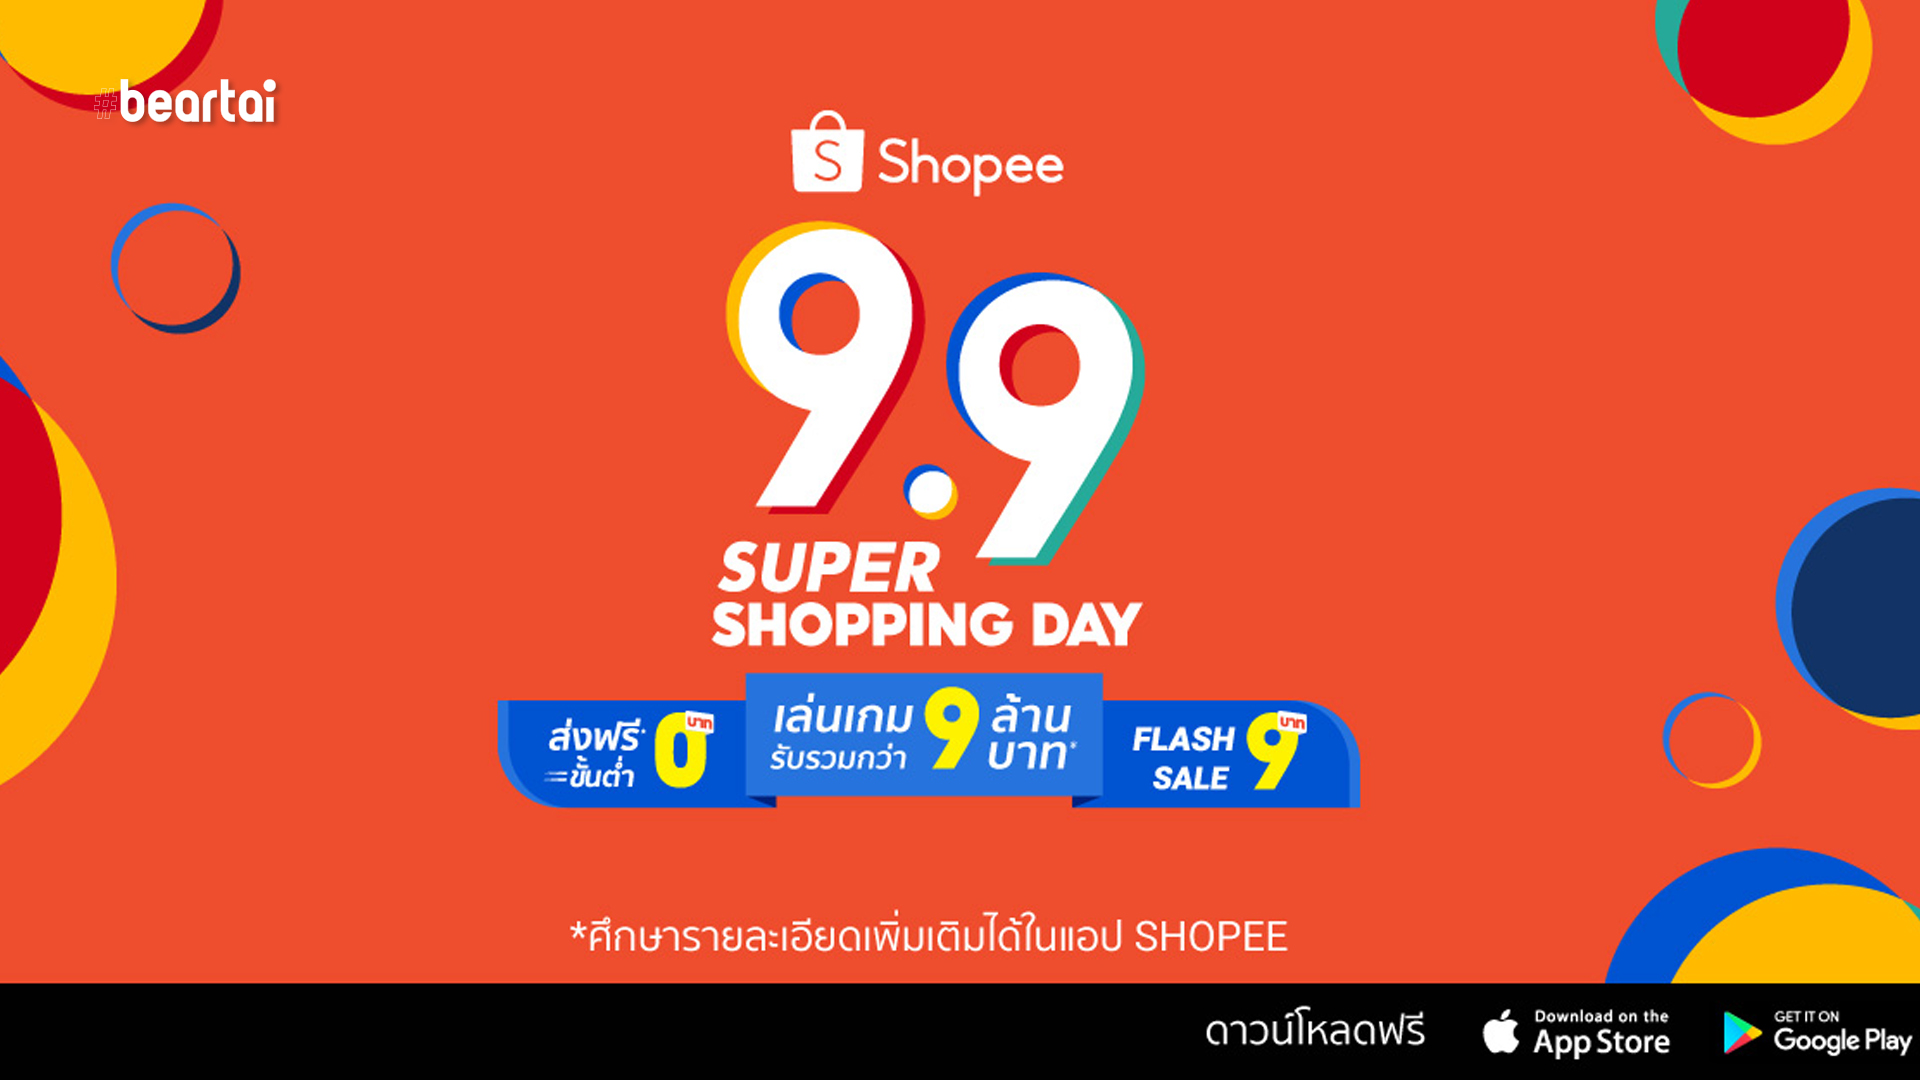 ช้อปปี้ประกาศ 3 พันธสัญญาสู่มหกรรมช้อปปิ้งครั้งยิ่งใหญ่ในระดับภูมิภาคแห่งปี “Shopee 9.9 Super Shopping Day”